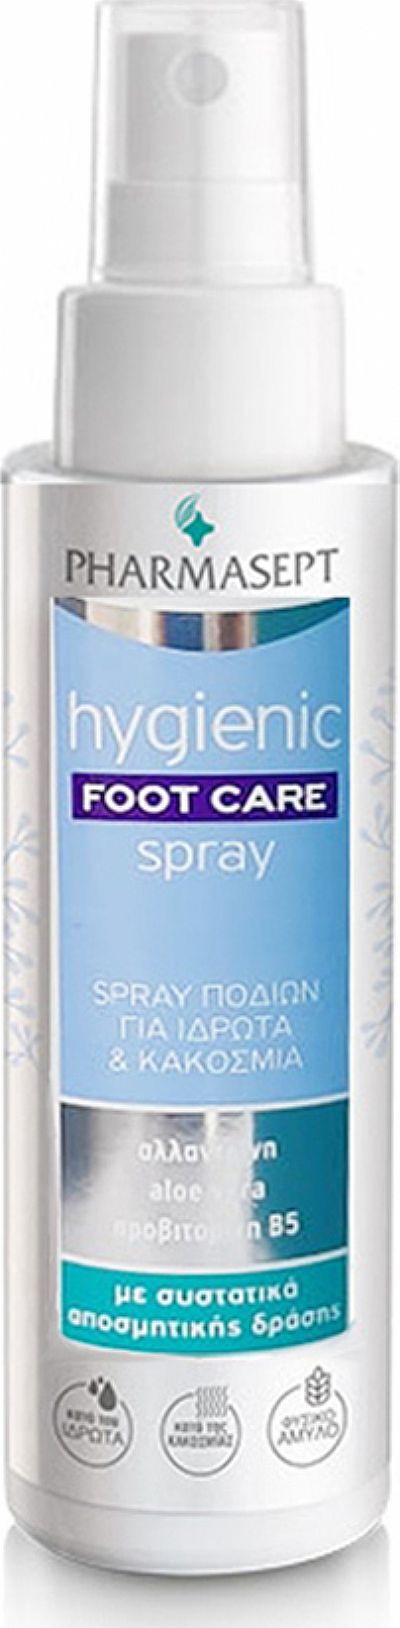 Pharmasept Hygienic Foot Care Spray 100ml